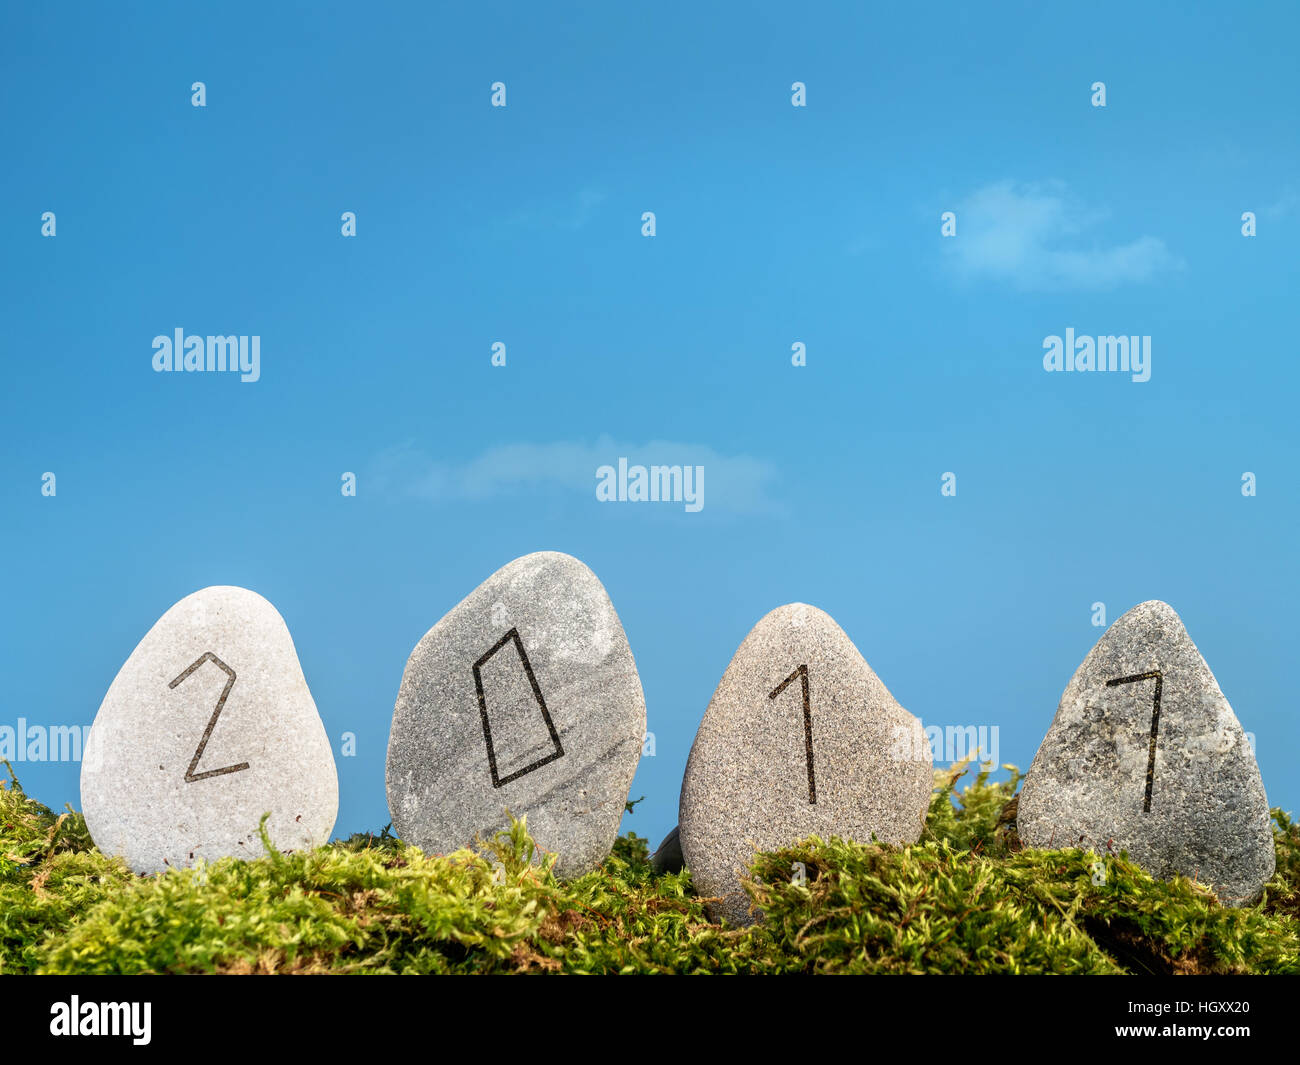 Nouvelle Année 2017 date gravée dans quatre pierres dans le style alphabet runique sur ciel bleu Banque D'Images